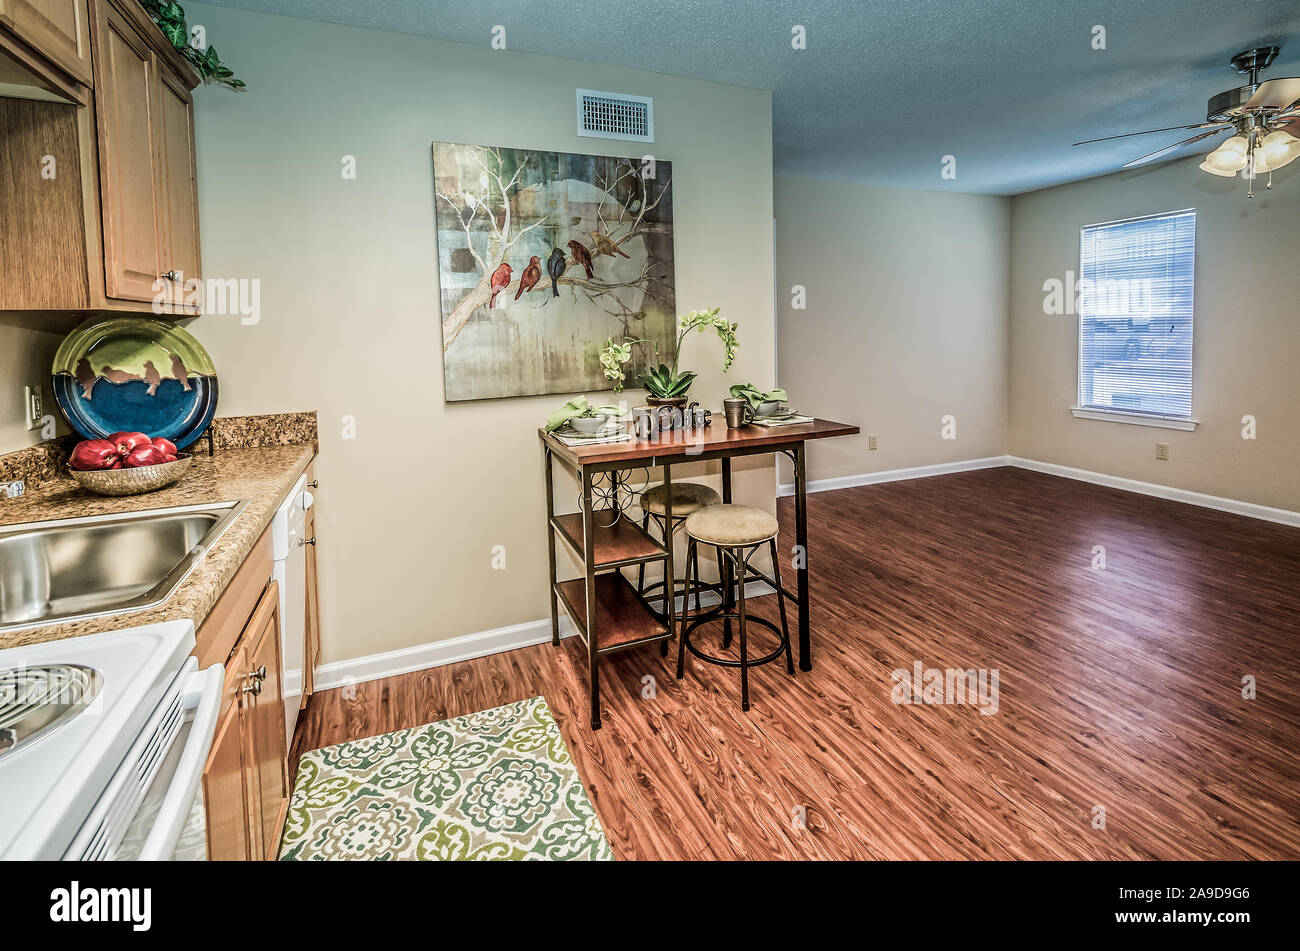 Eine offene Raumaufteilung bietet einfachen Zugriff auf die Küche, Esszimmer und Wohnzimmer im Herbst Wald Wohnung Wohnungen in Mobile, Alabama. Stockfoto